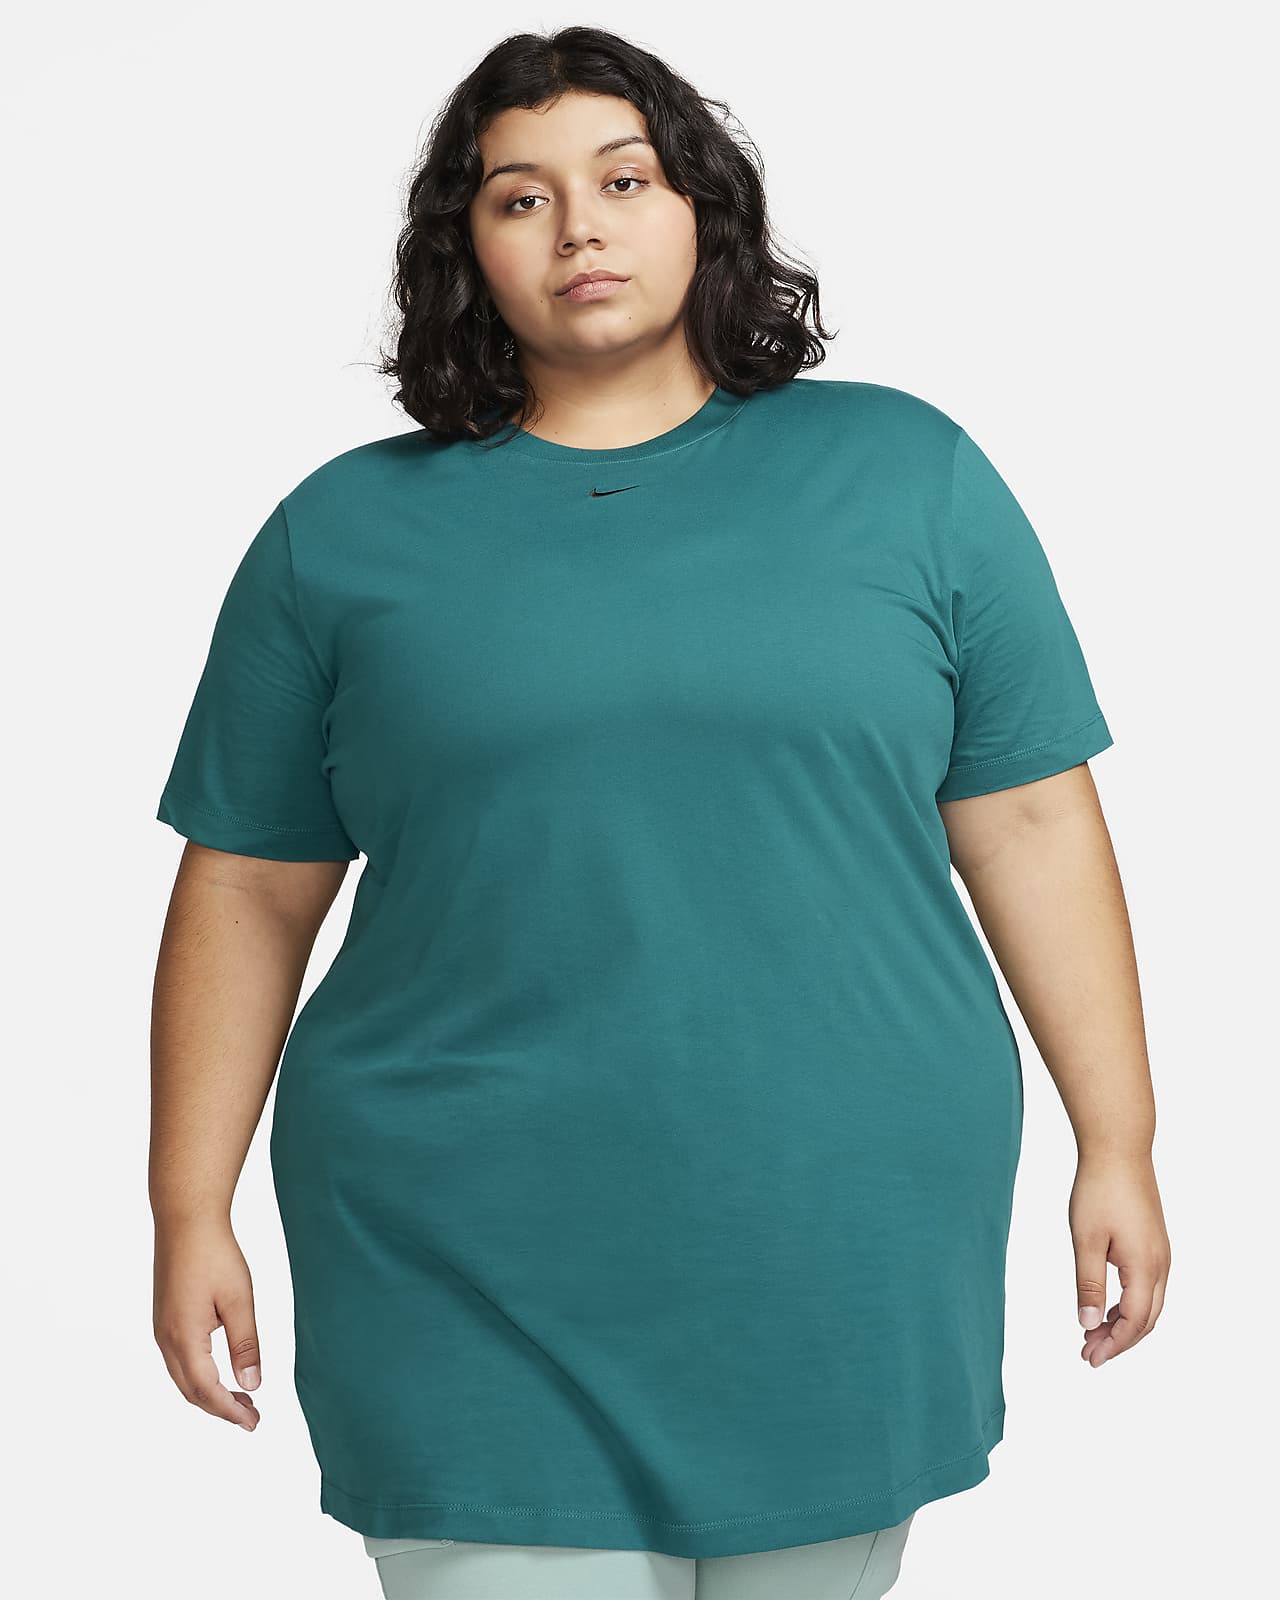 Nike Sportswear Essential Women's Short-Sleeve T-Shirt Dress (Plus Size).